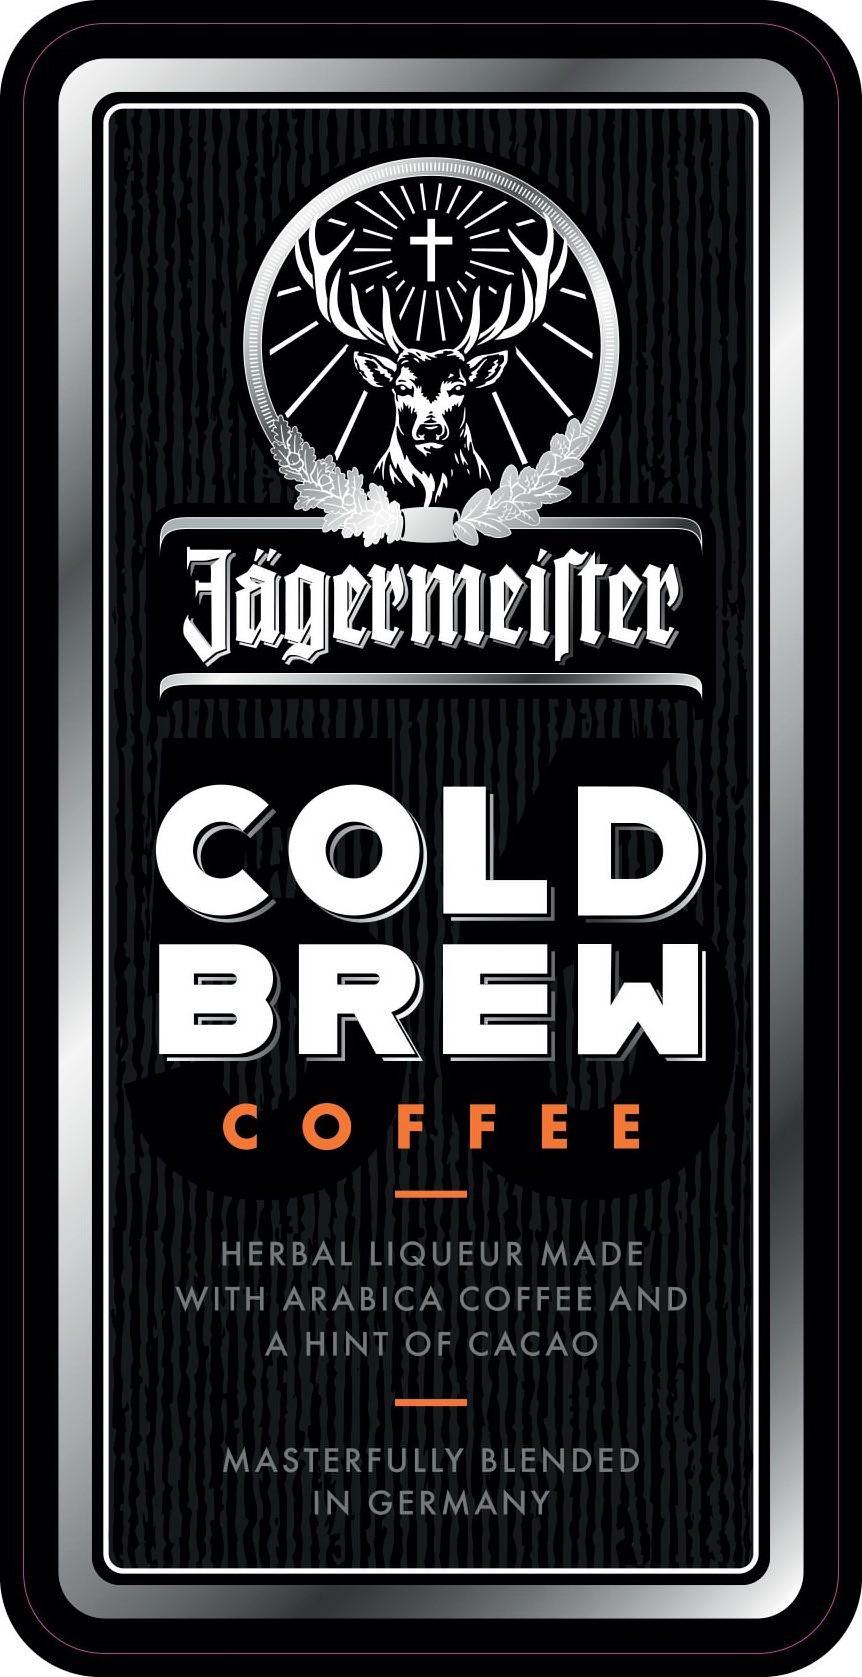  JÃGERMEISTER COLD BREW COFFEE HERBAL LIQUEUR MADE WITH ARABICA COFFEE AND A HINT OF CACAO MASTERFULLY BLENDED IN GERMANY